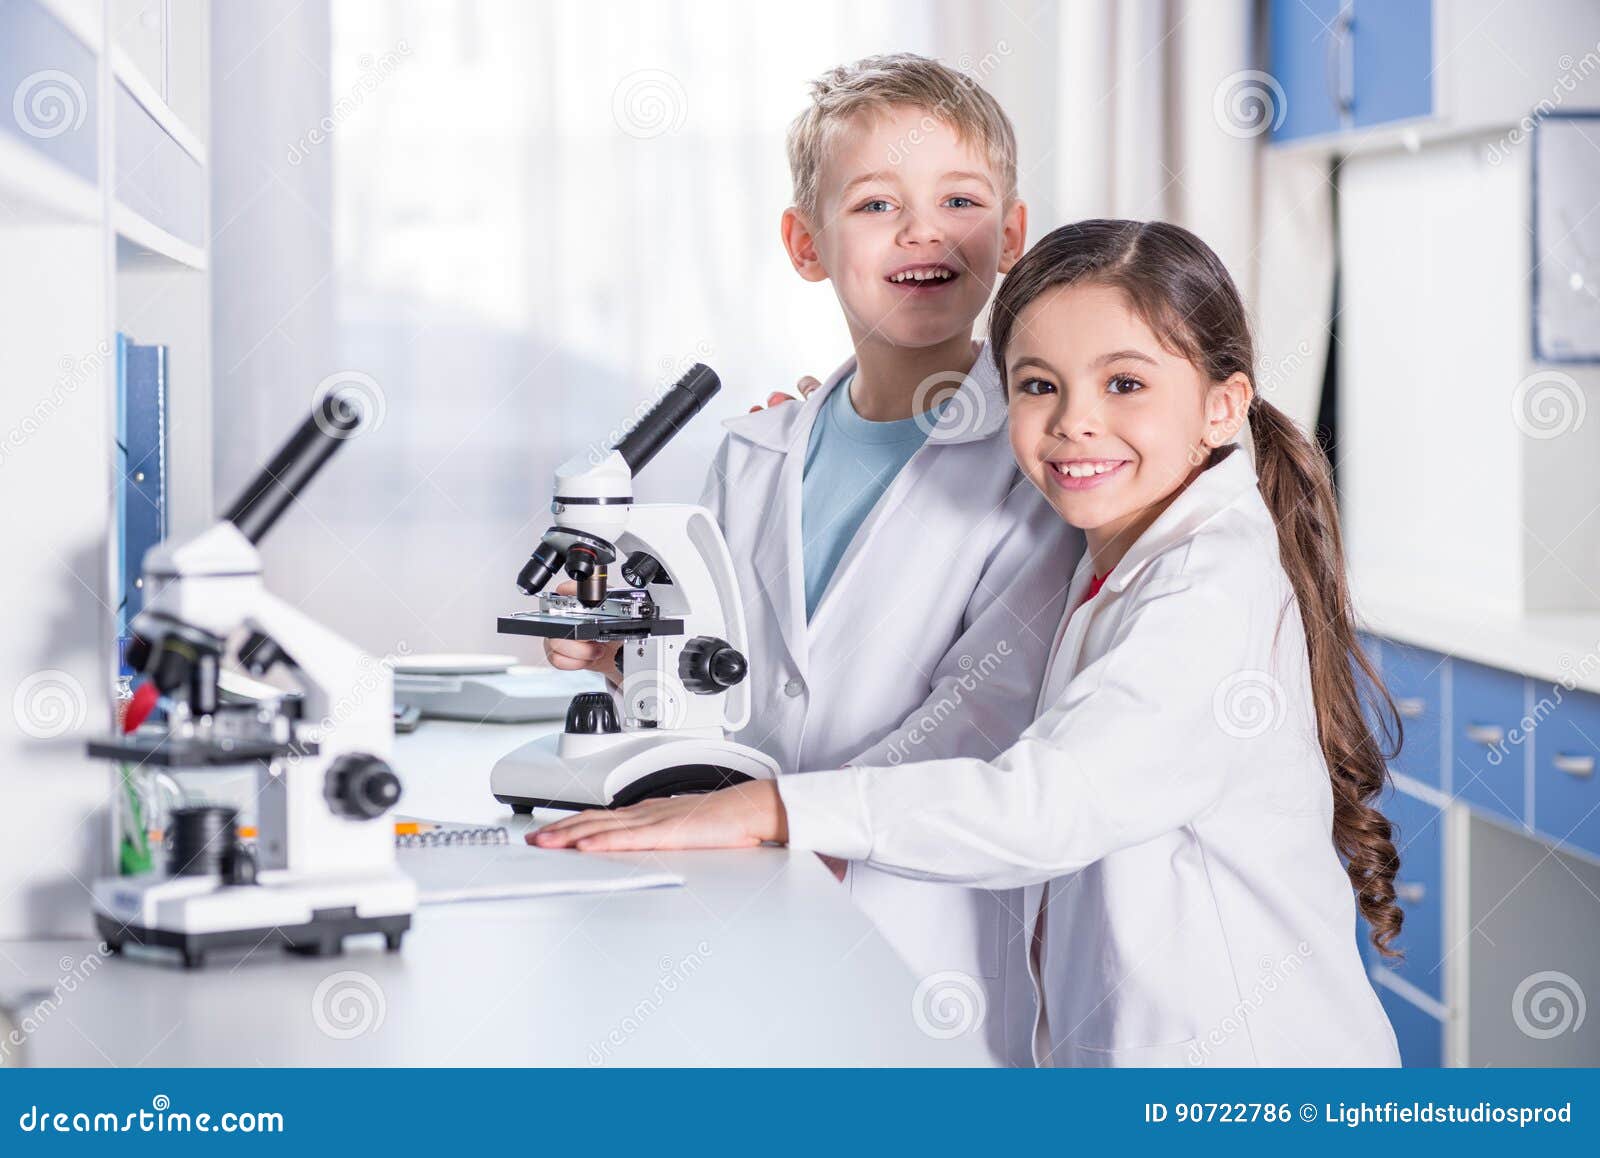 В биологии увлекаетесь. Микроскоп для детей. Мальчик с микроскопом. Микроскоп для школьника. Ученик с микроскопом.